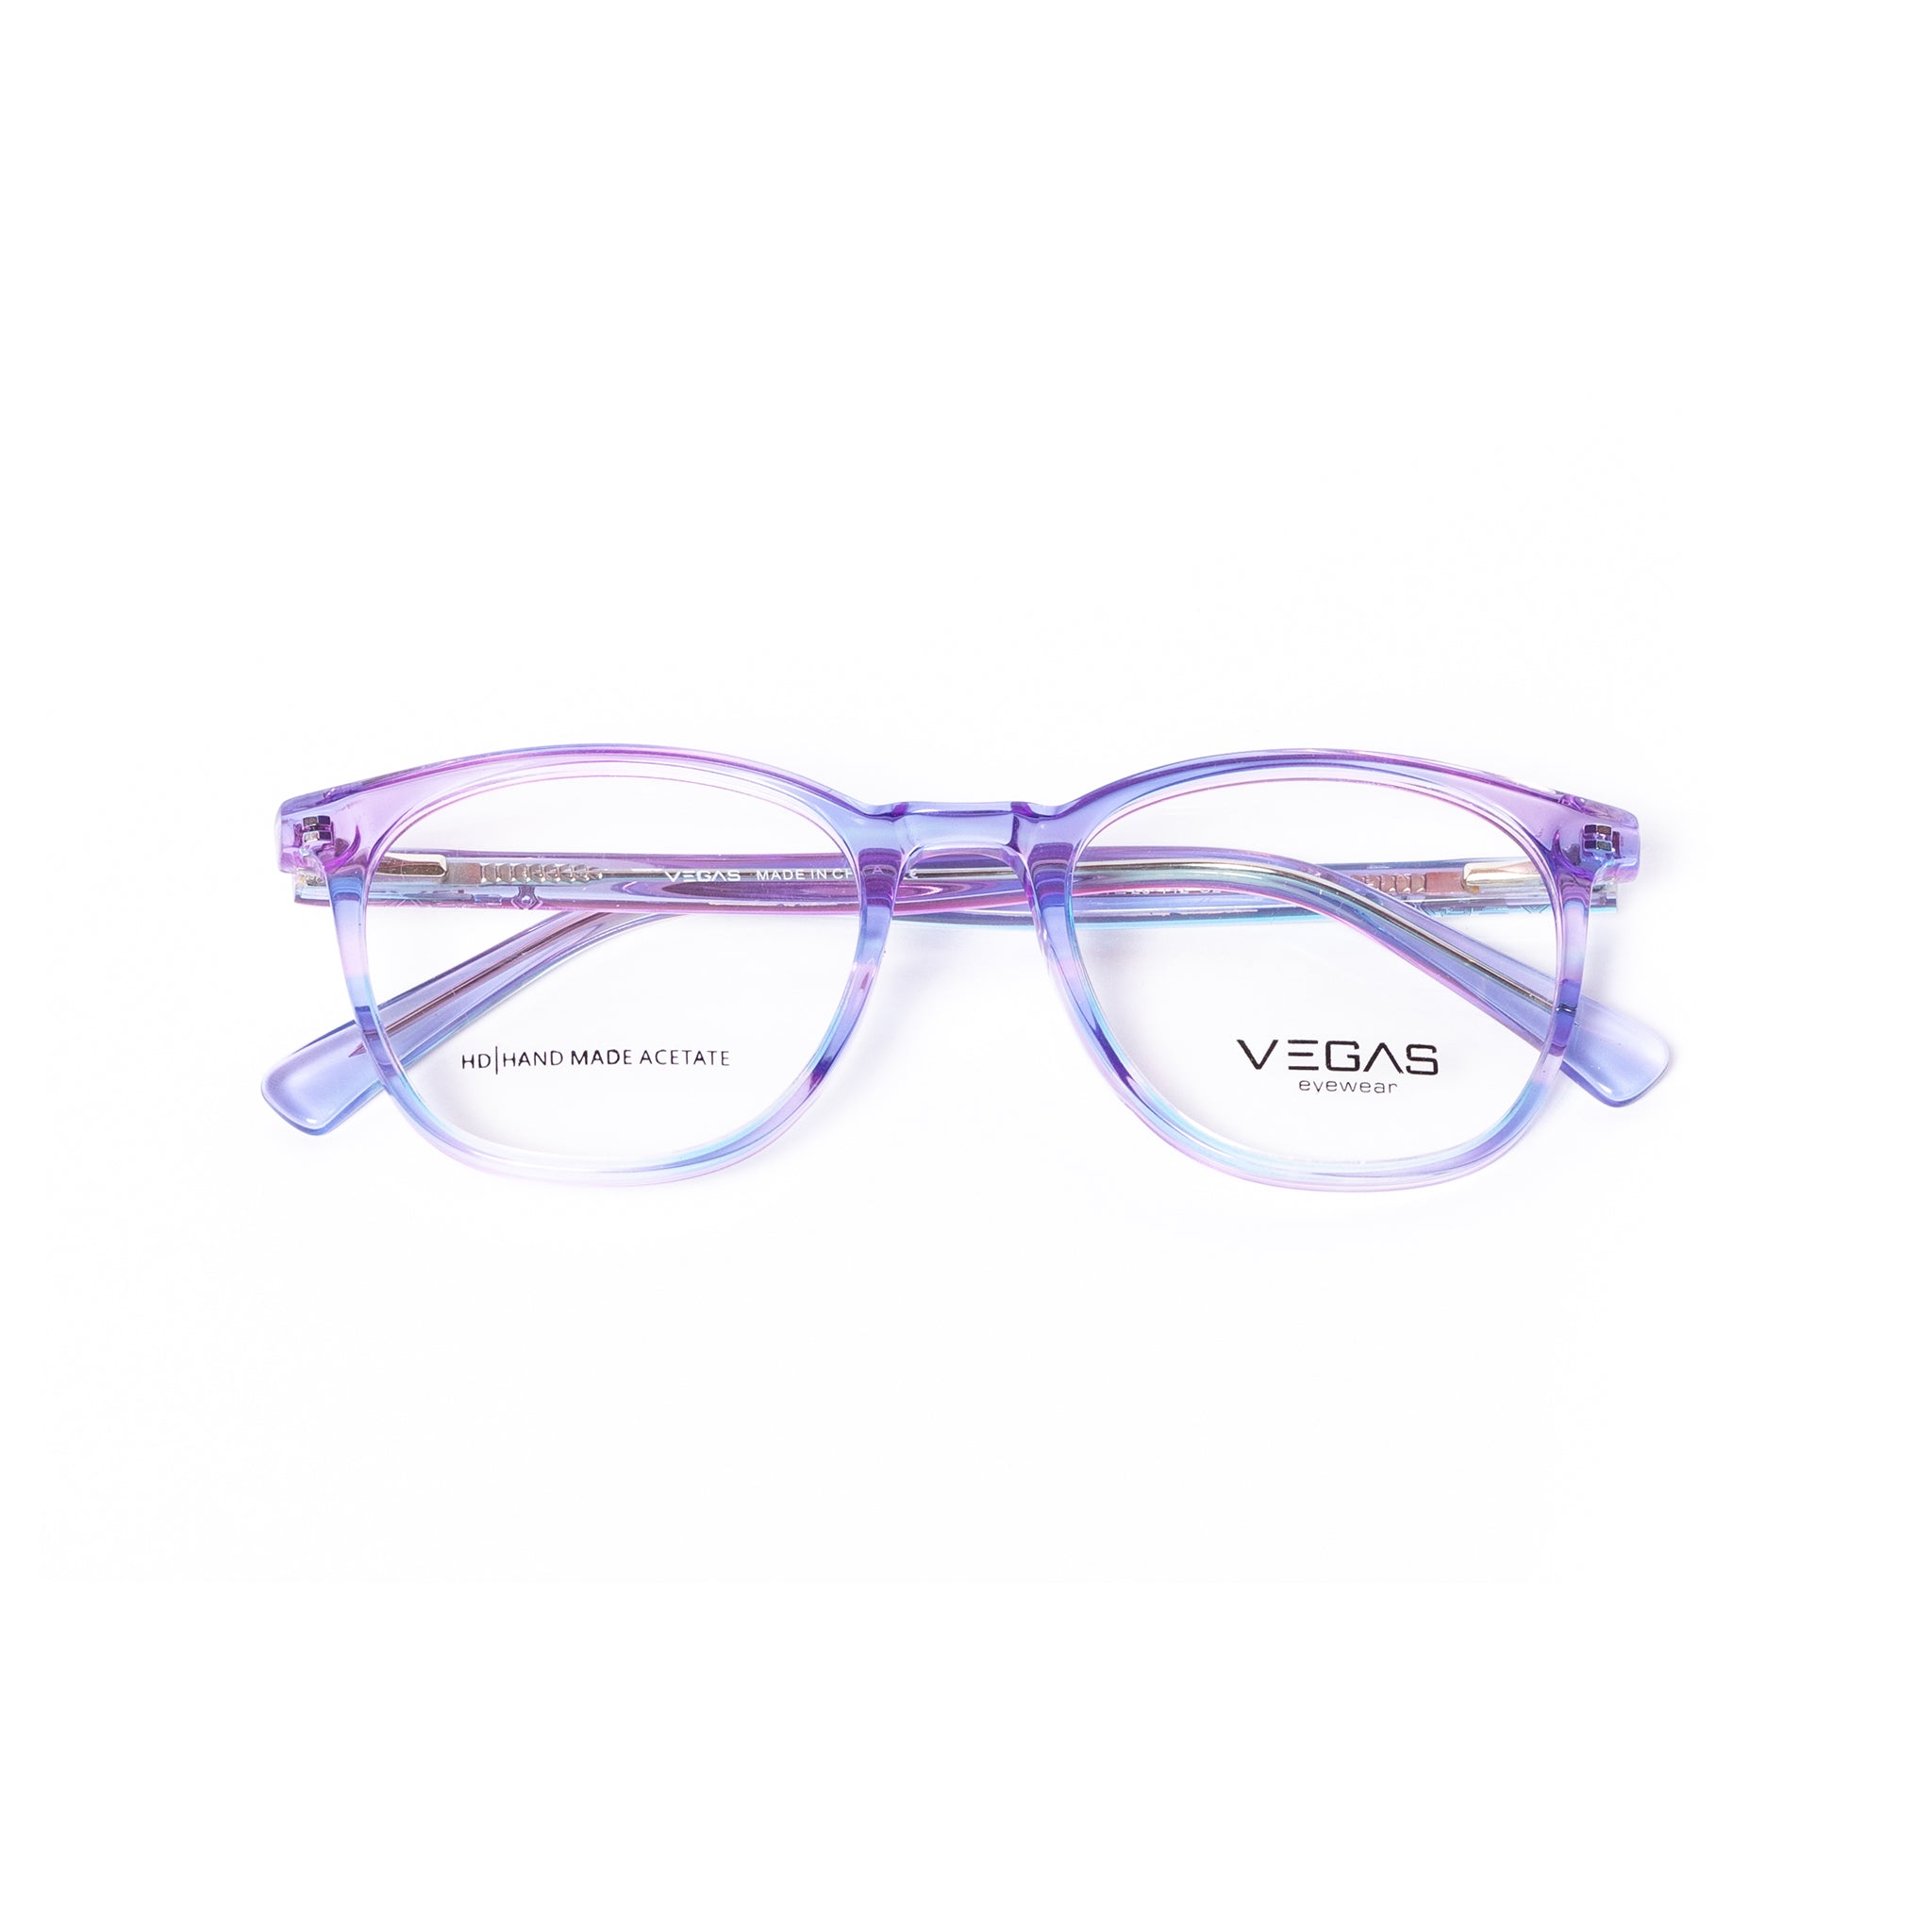 VEGAS M3004 - COC Eyewear